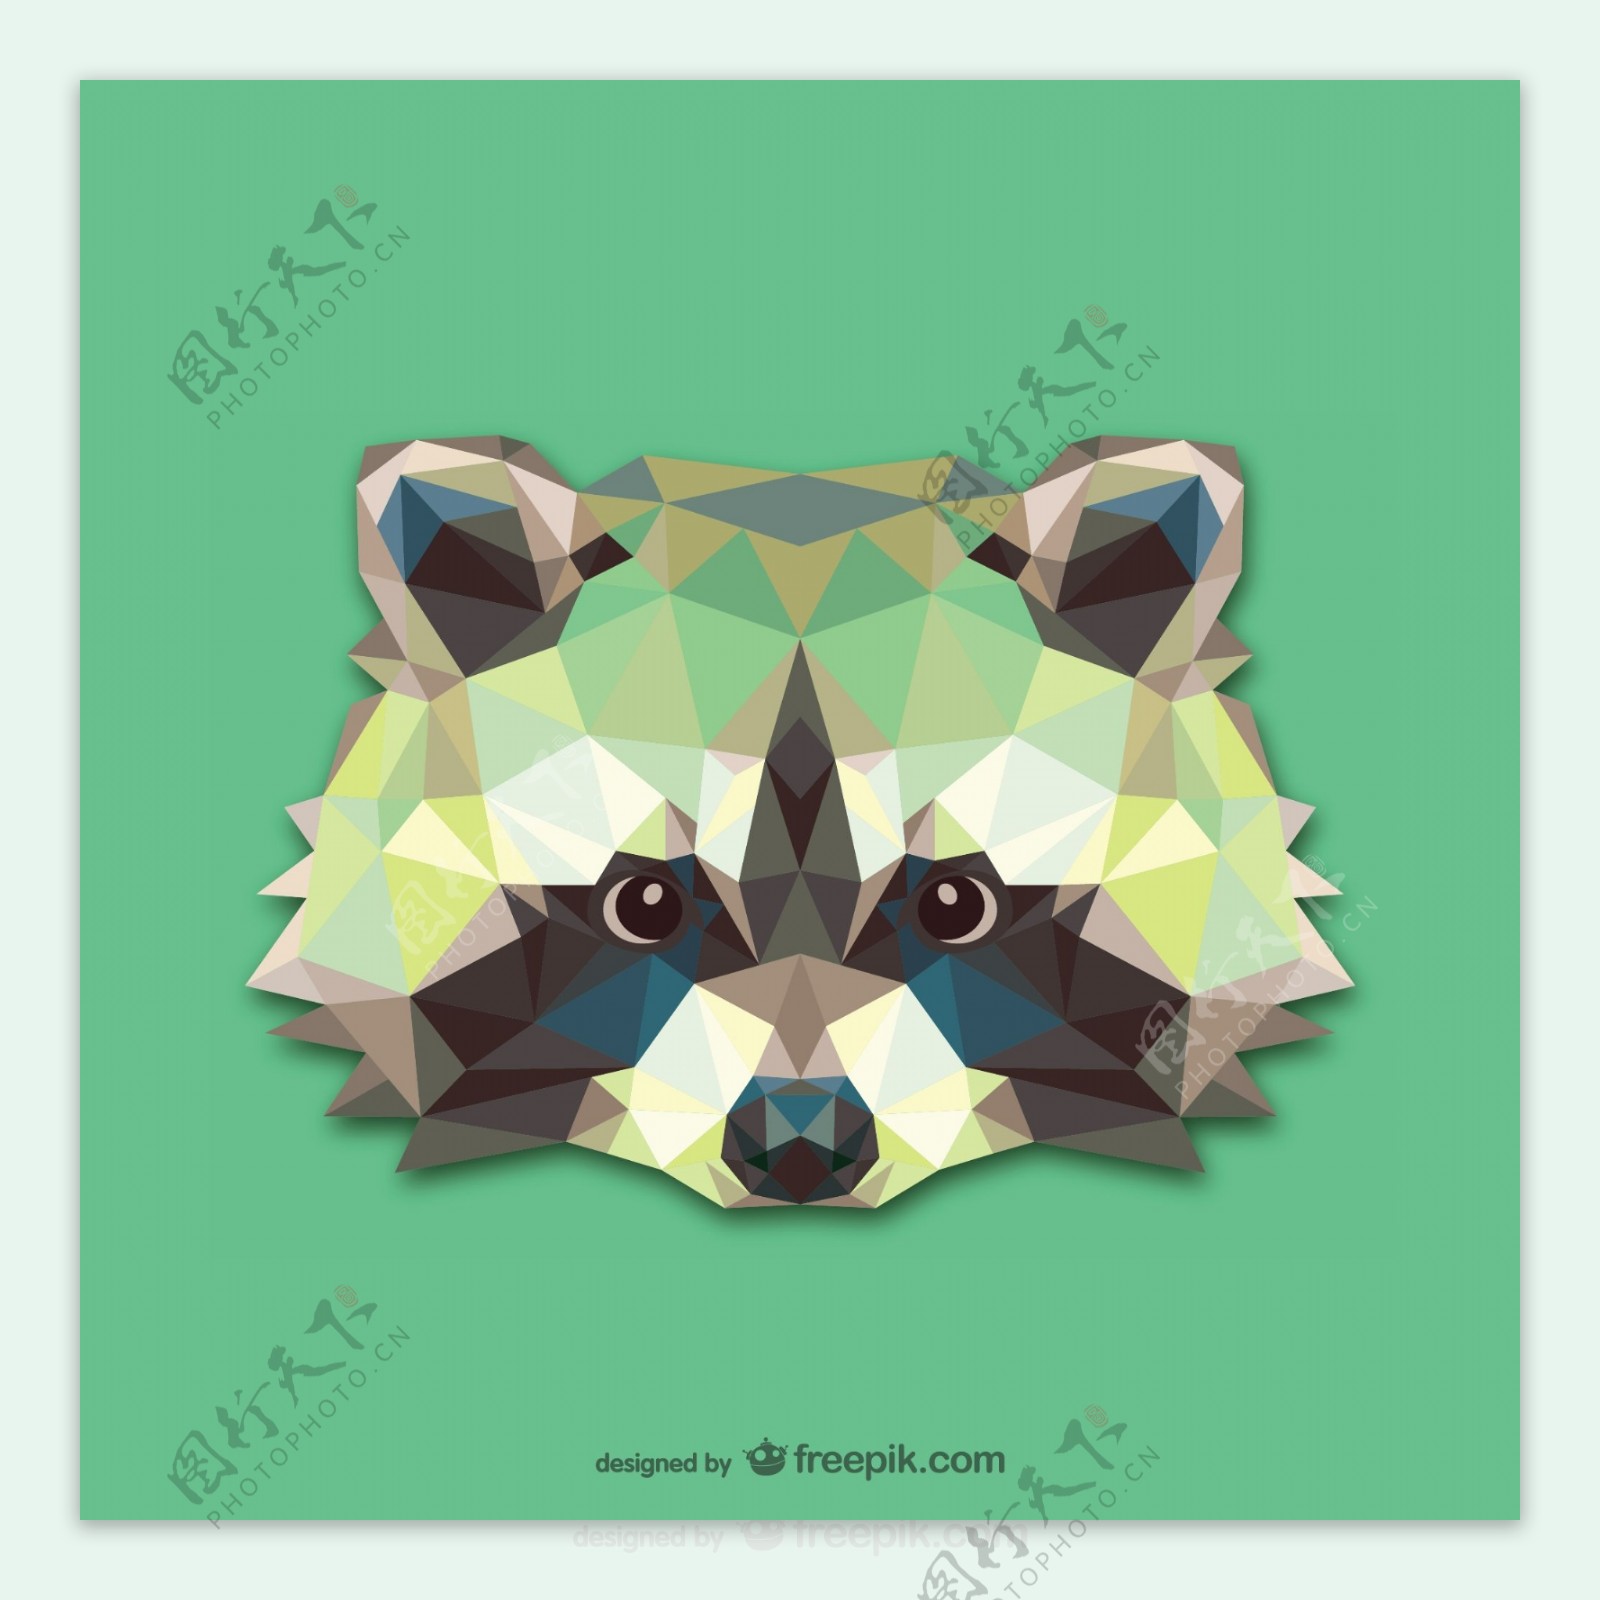 三角形的浣熊设计